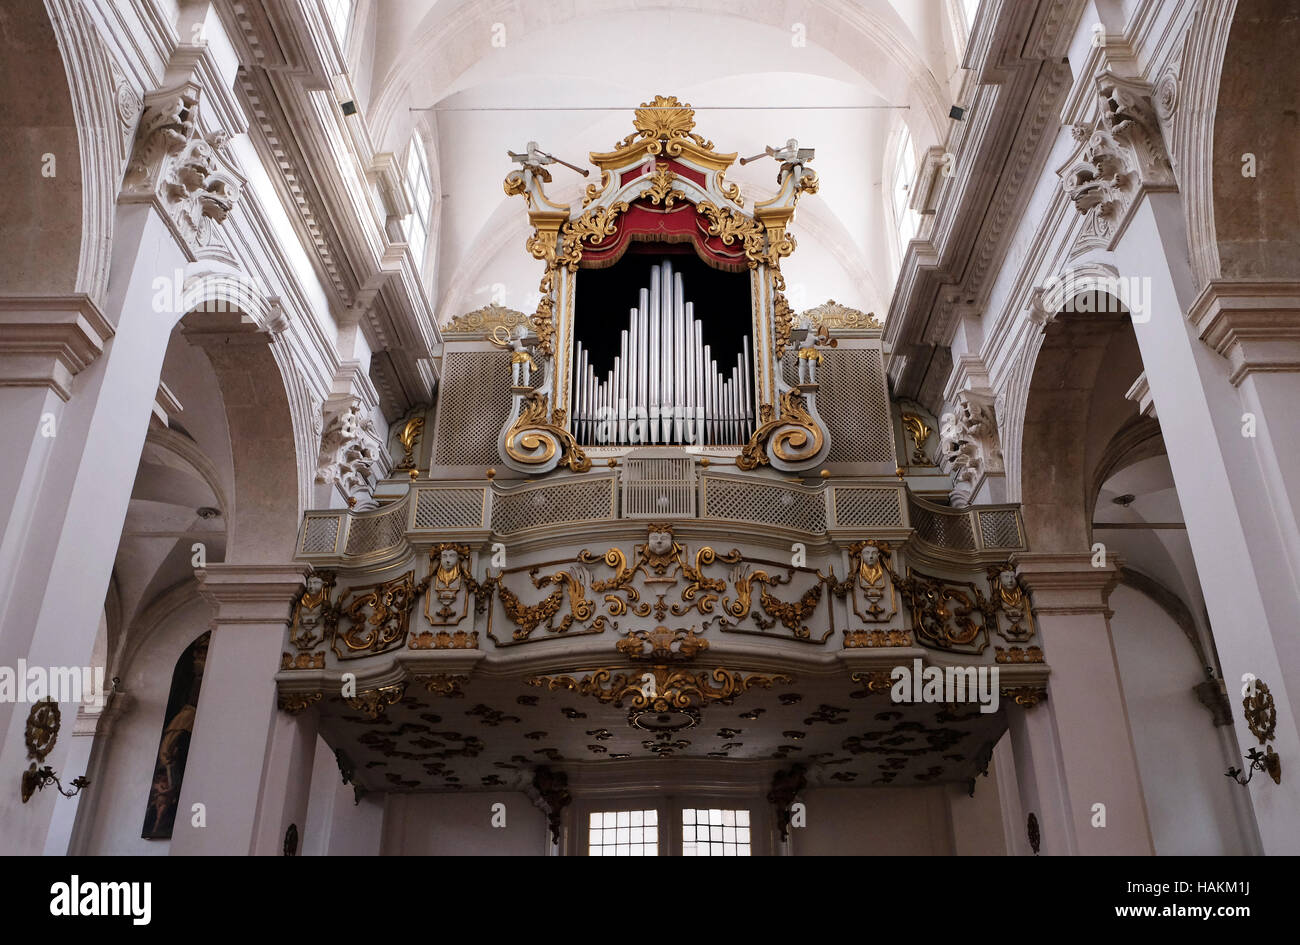 Vieil orgue majestueux dans la cathédrale de Dubrovnik, Croatie le 01 décembre 2015. Banque D'Images